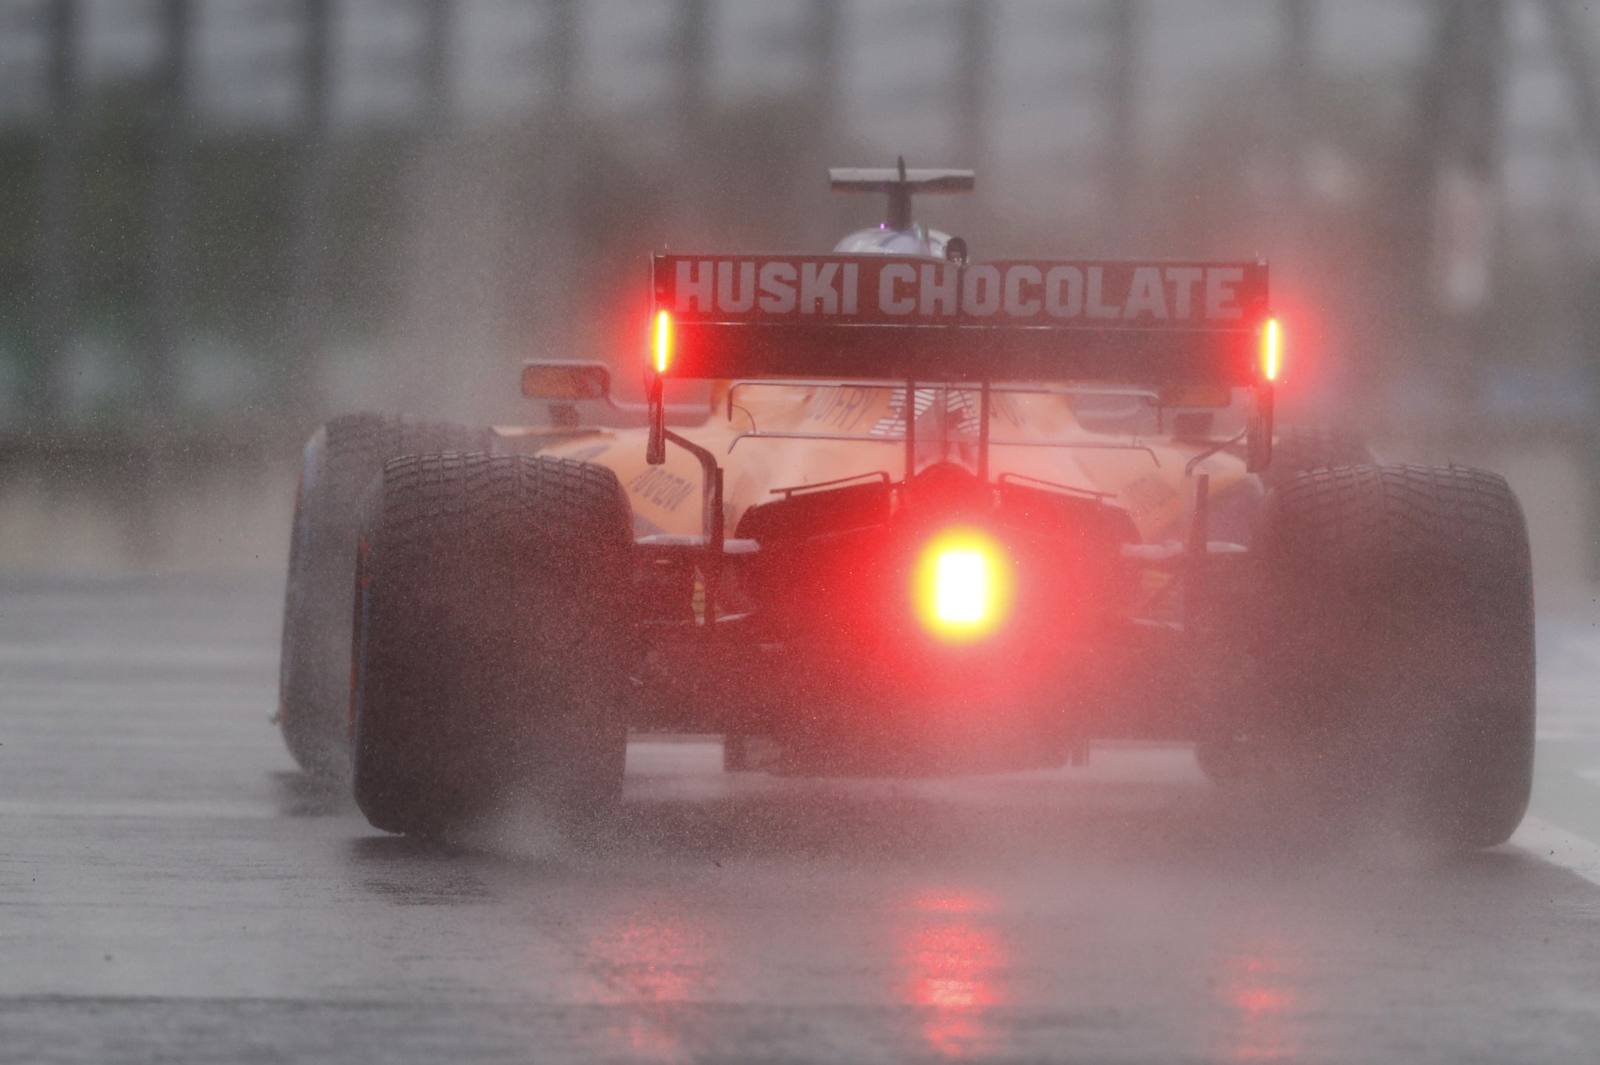 A McLaren voltou a mostrar bom desempenho na Hungria